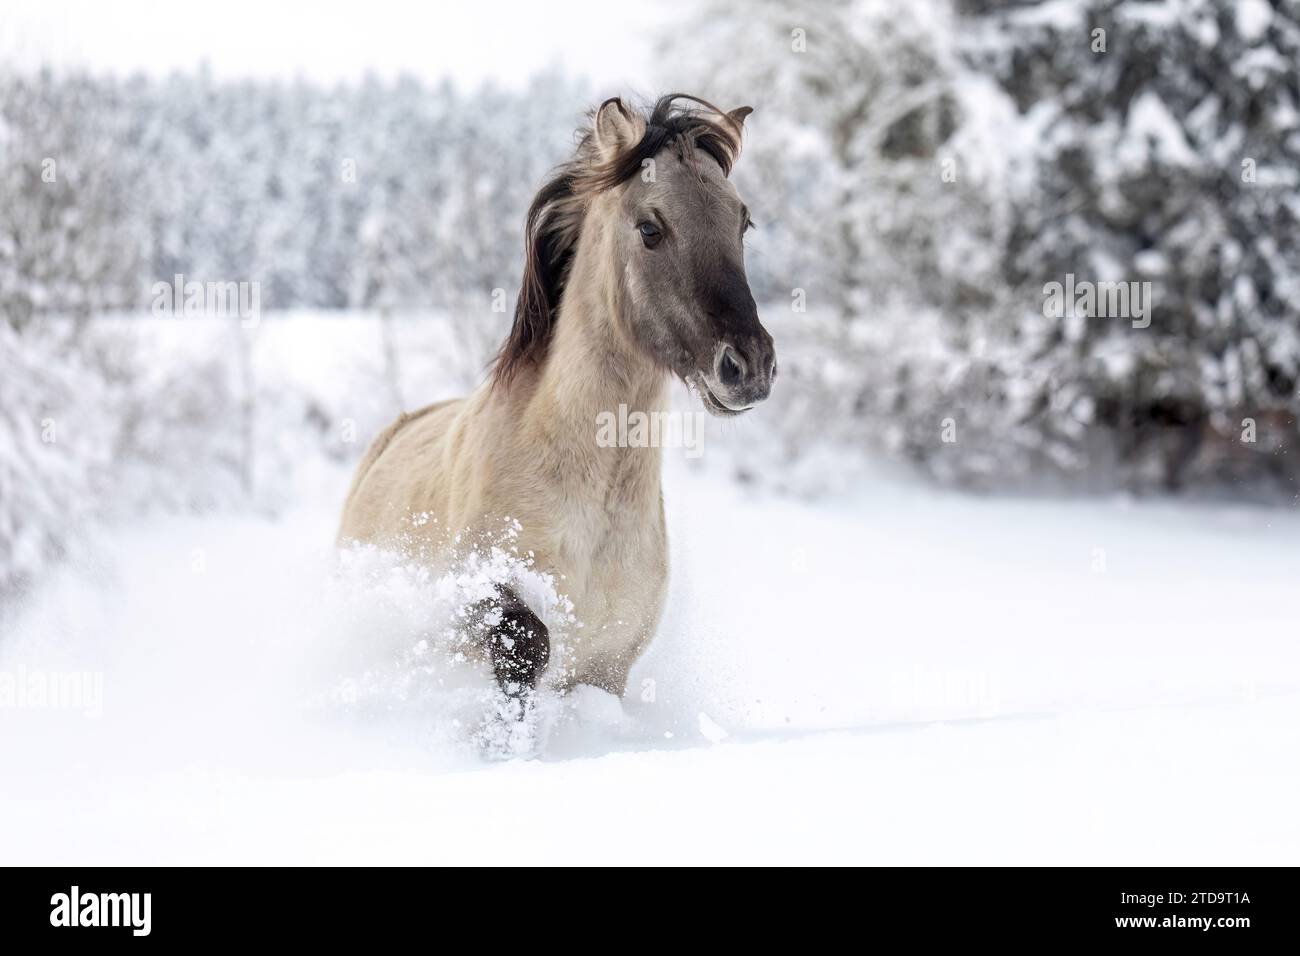 Ein wunderschöner konik-Pferdewallach, der durch eine verschneite Winterlandschaft im Freien läuft Stockfoto